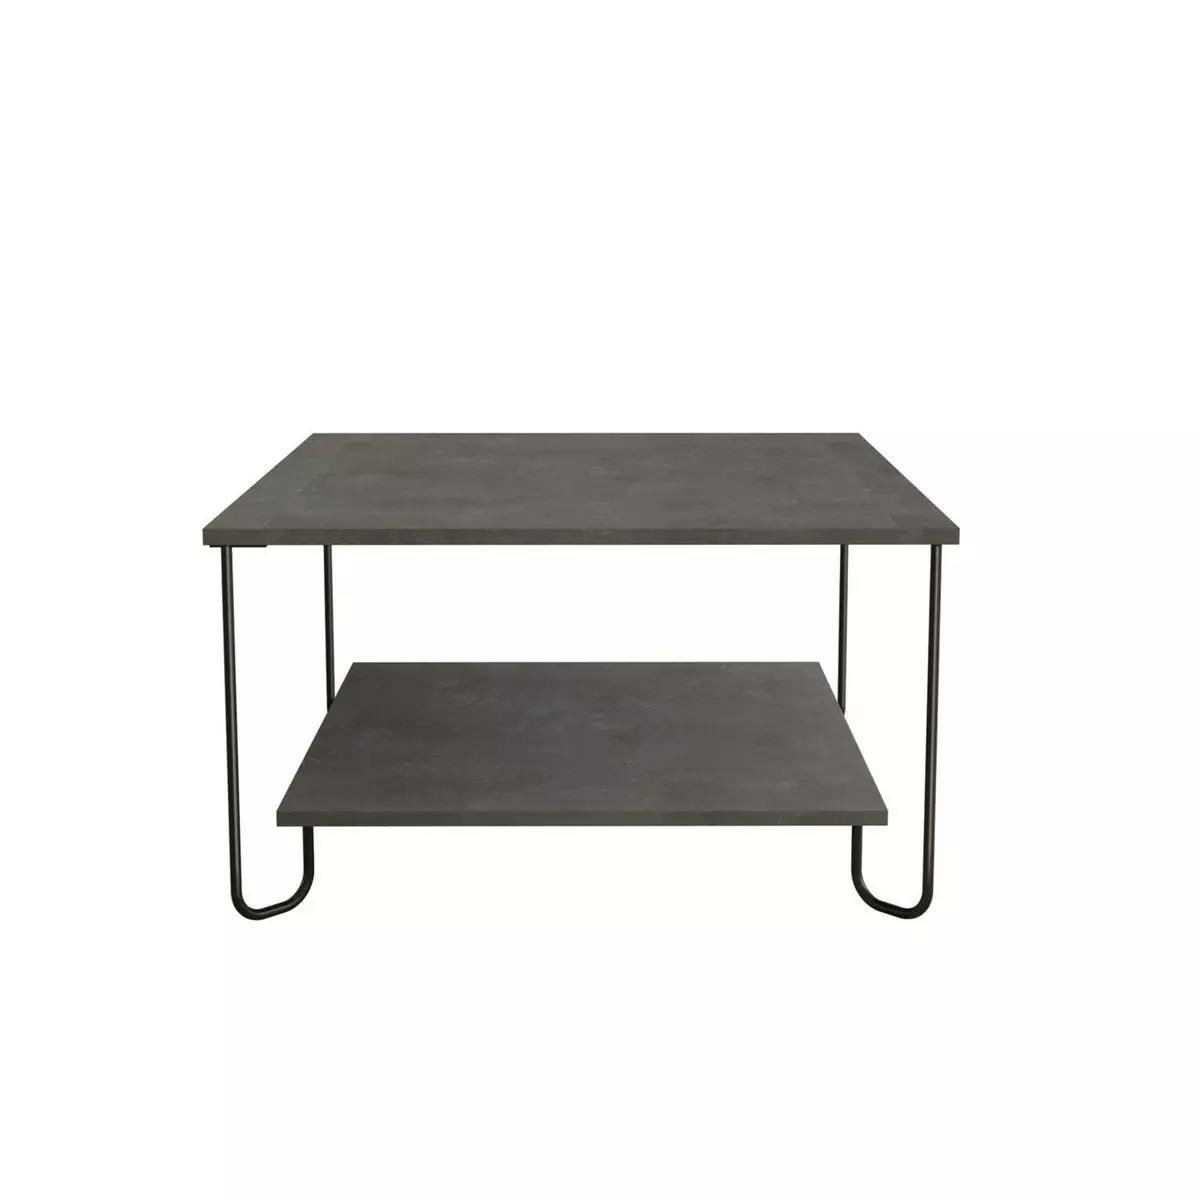 TOILINUX Table basse design métal Marbo - L. 80 x H. 45 cm - Gris